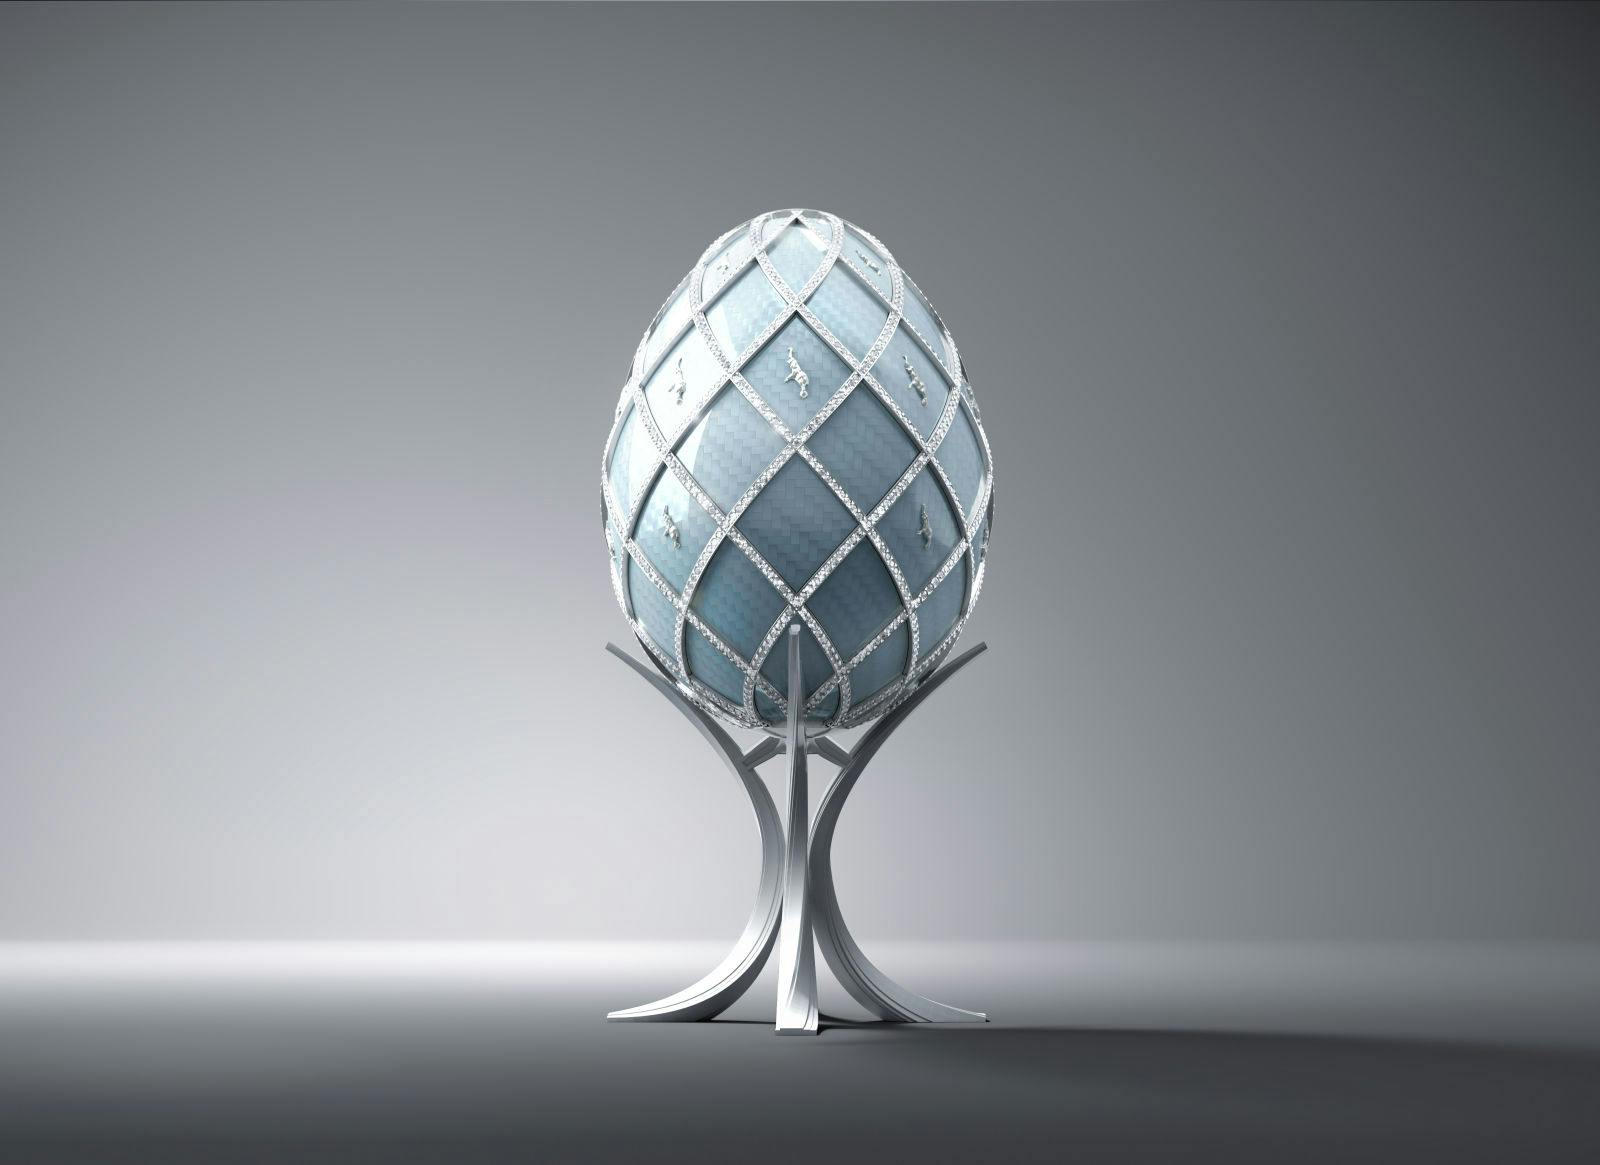 Die Eierschale der Royale Edition der Asprey Bugatti Egg Collection besteht aus Carbonfaser.